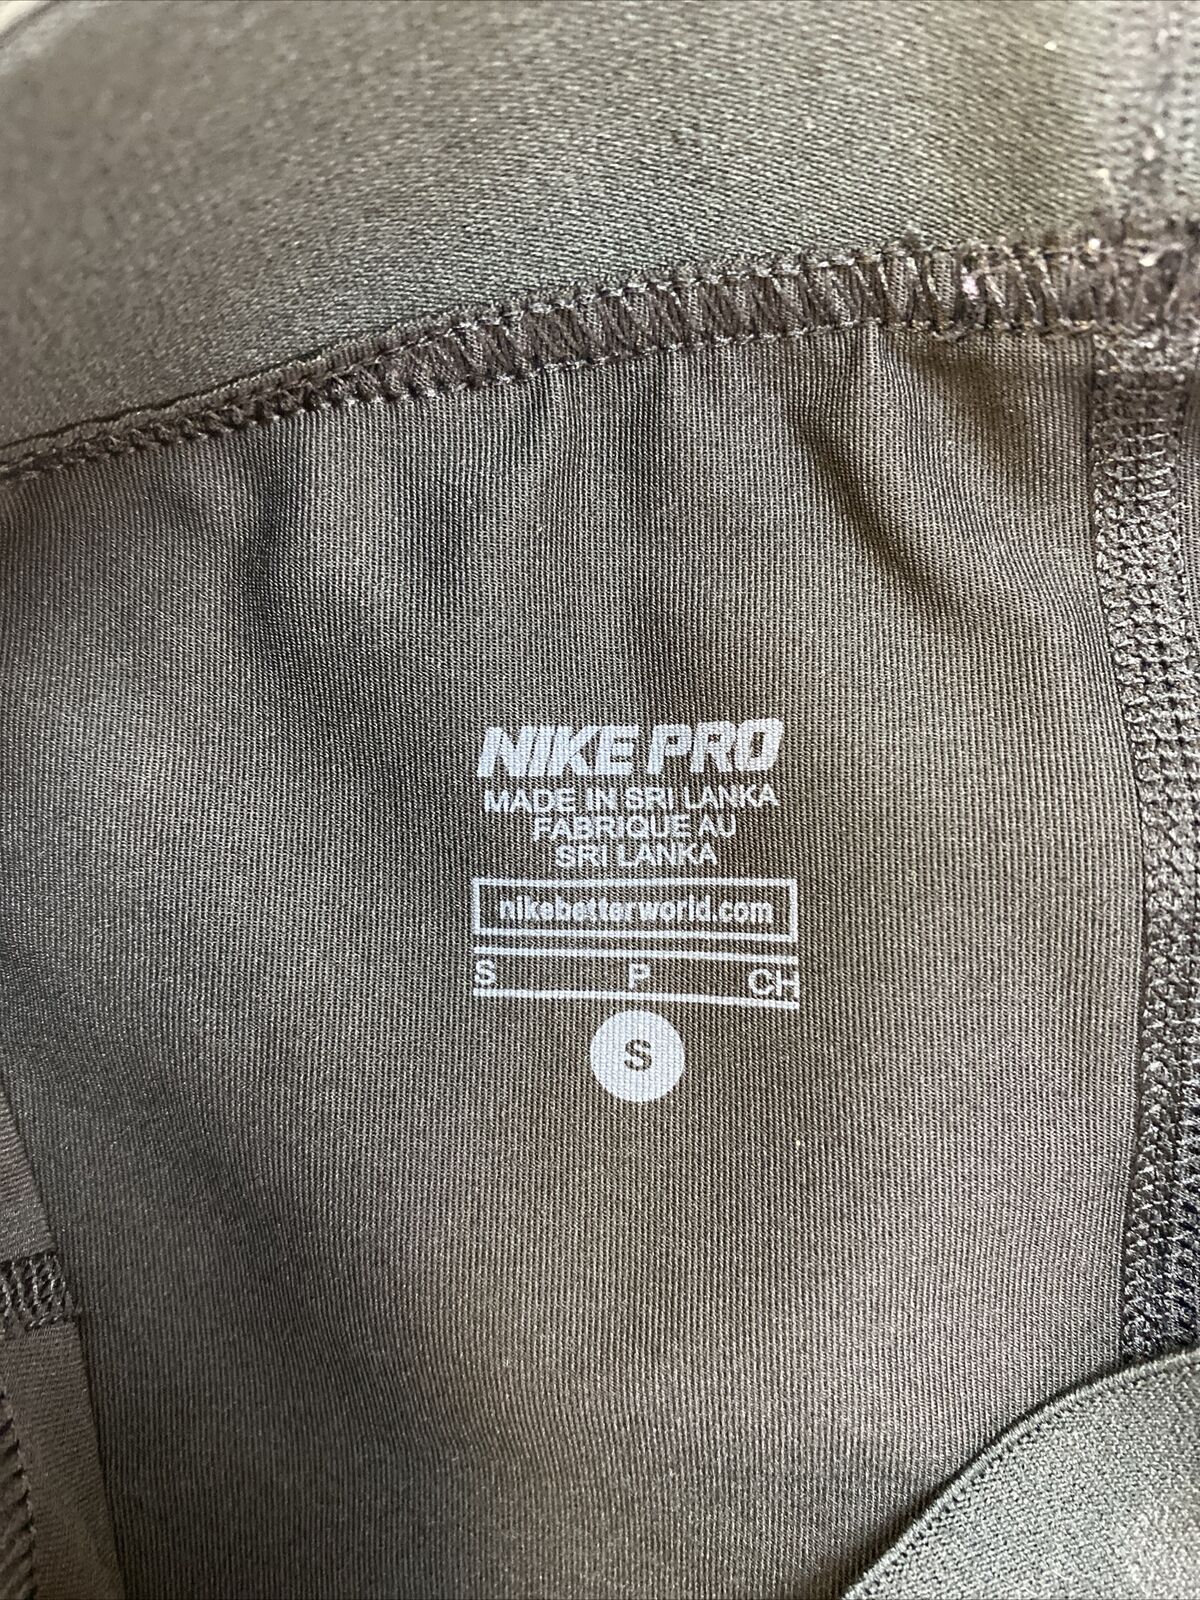 Nike Women's Pro Capri Hypercool Flash Compression Pants Sz S